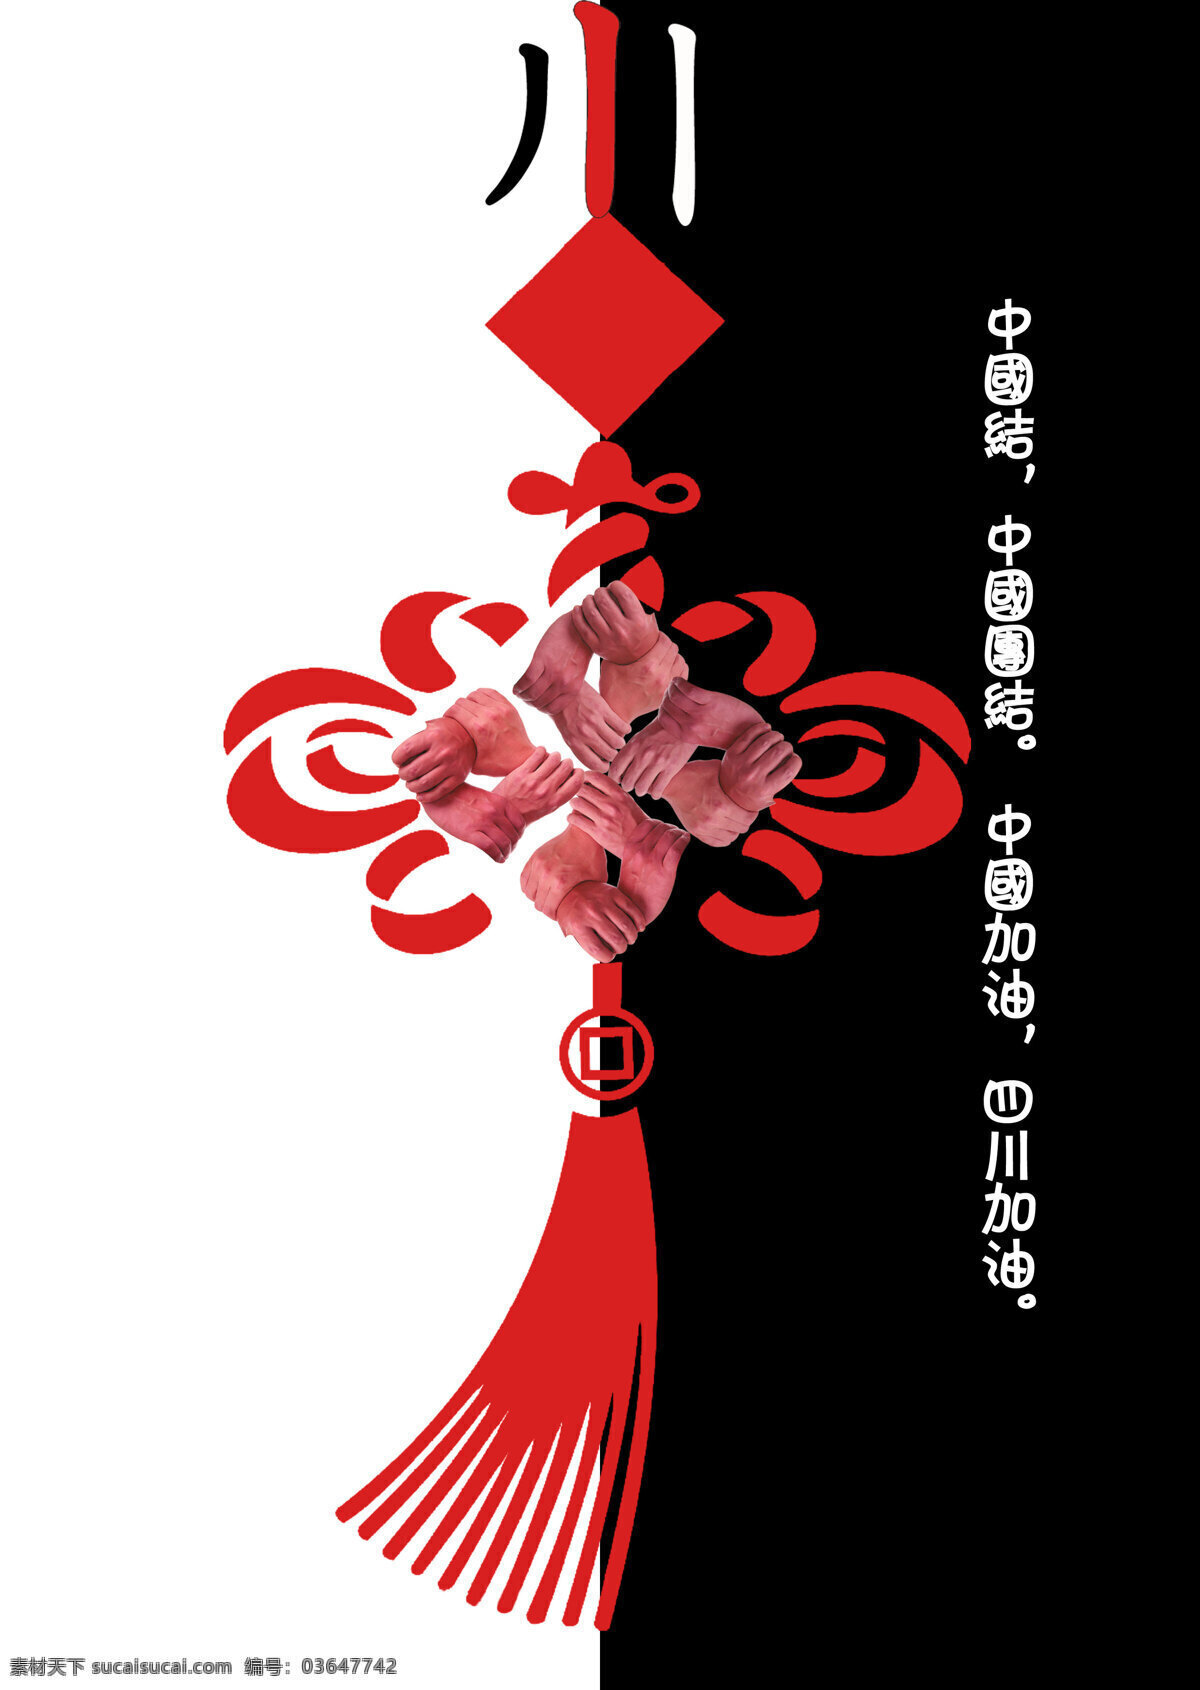 设计图库 汶川地震 招贴设计 中国加油 中国结 中国印象 纪念 汶川 地震 海报 设计素材 模板下载 中国团结 其他海报设计